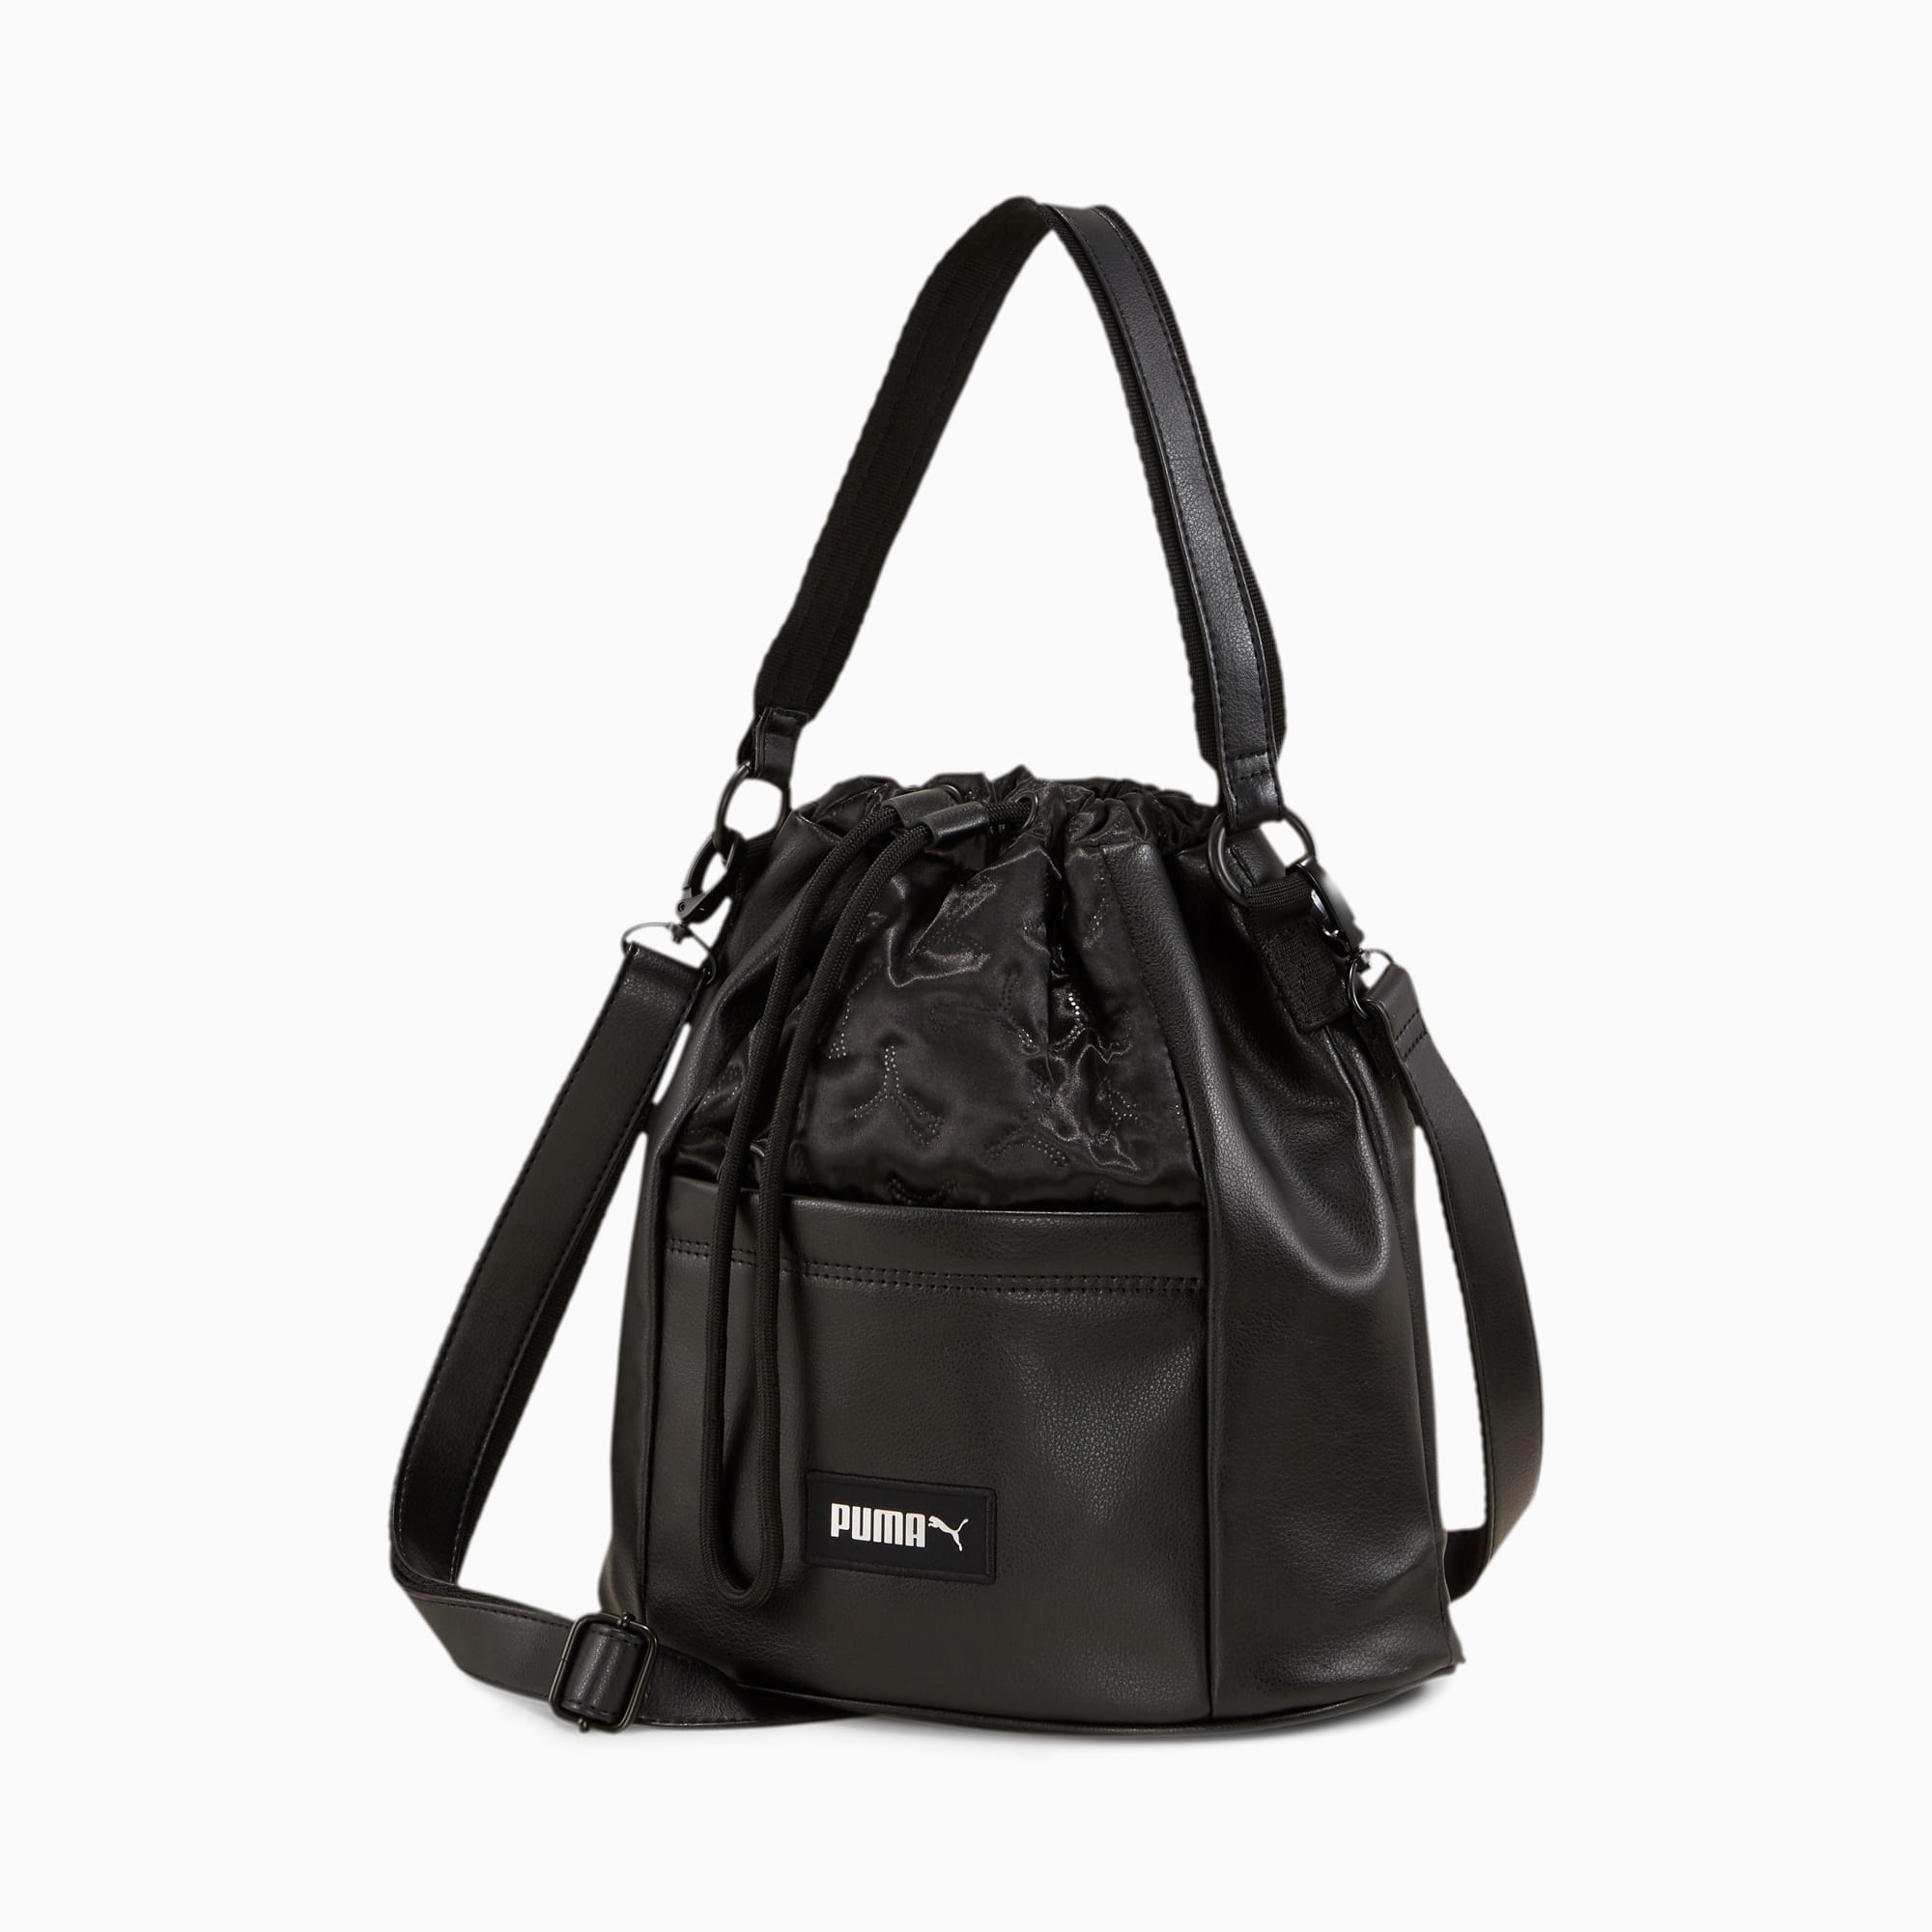 puma prime classics handbag